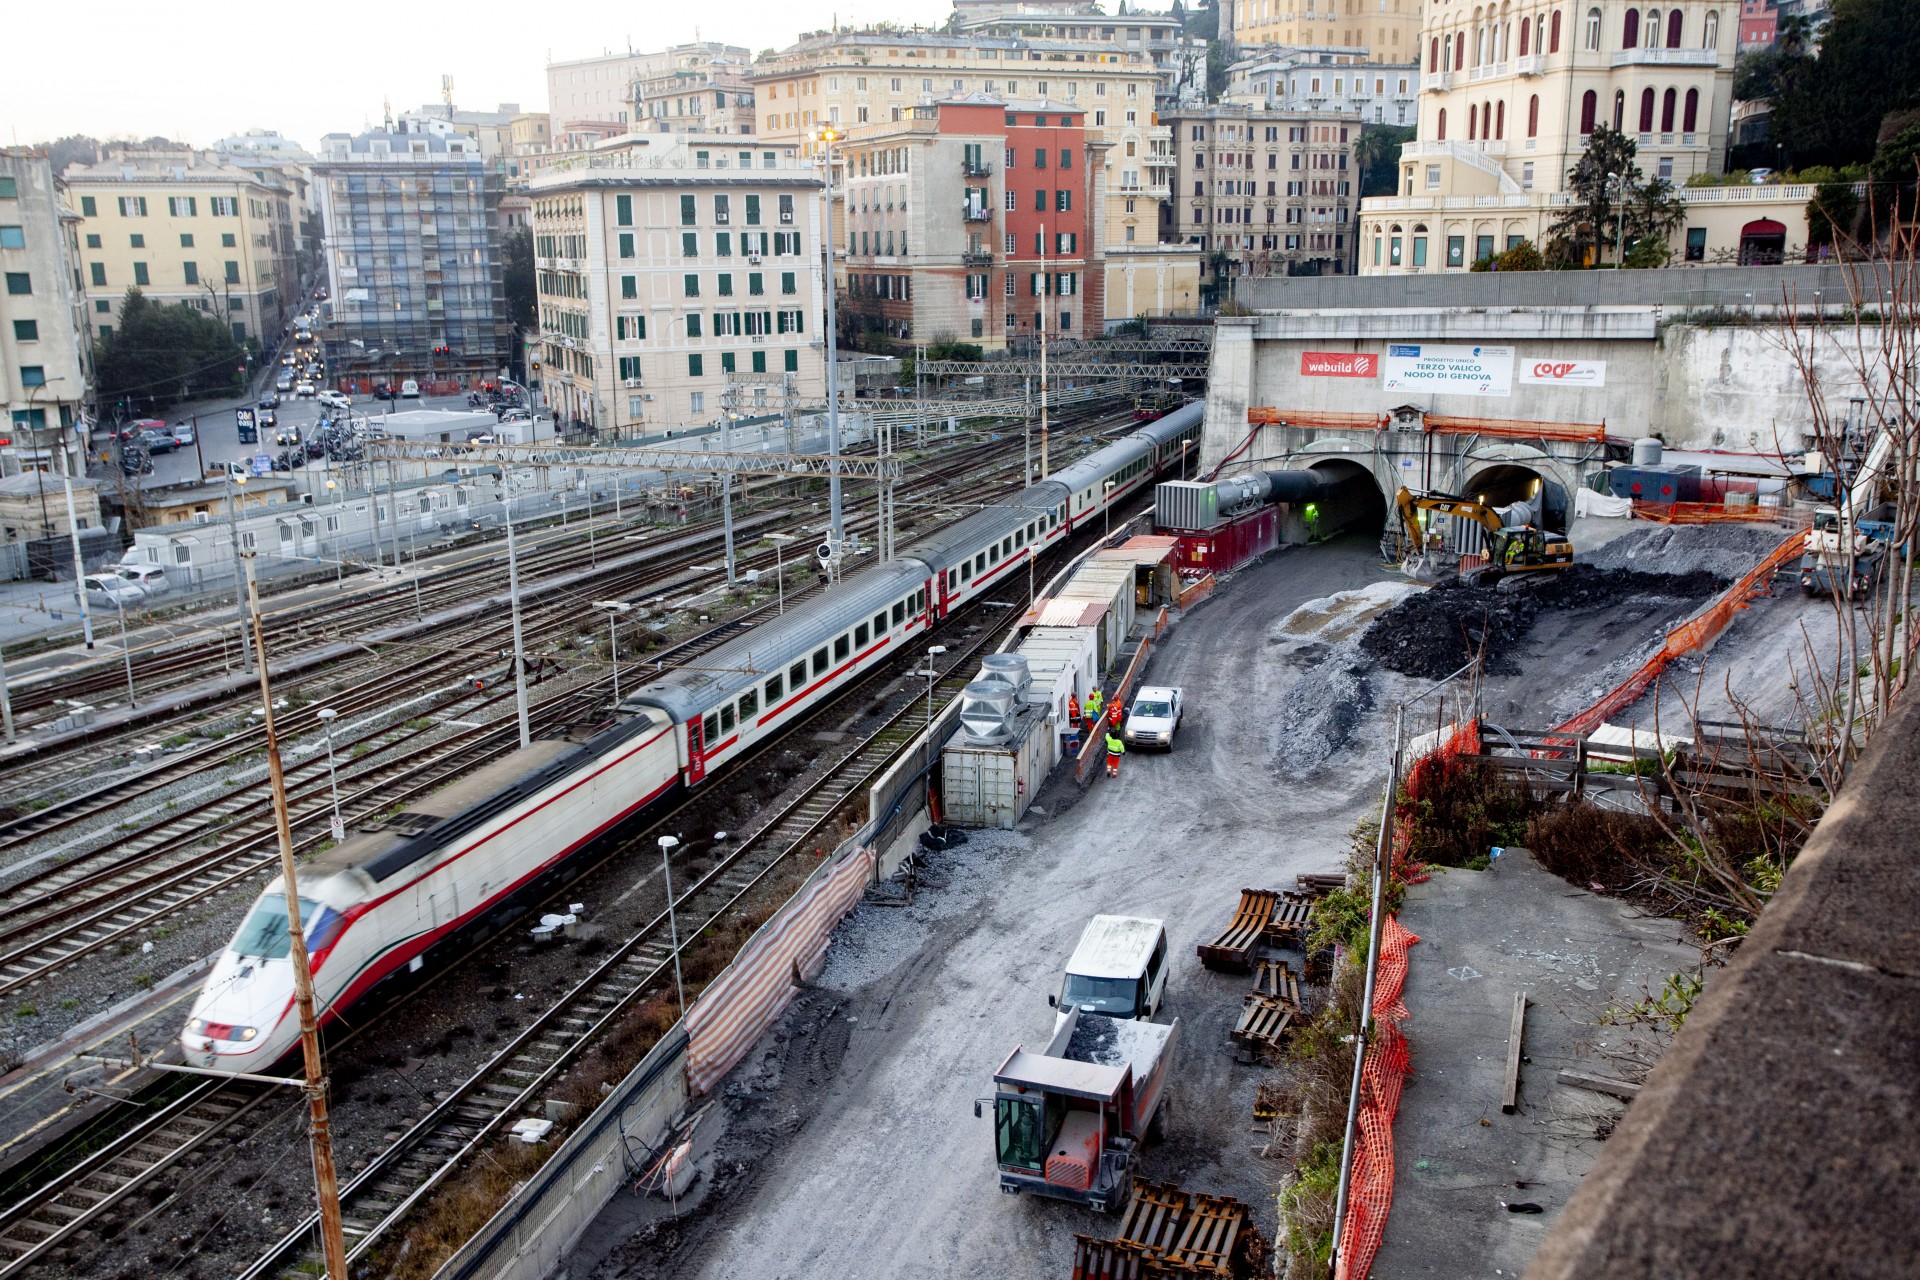 Filt Cgil, Fit Cisl, Uiltrasporti, Fast, Ugl e Orsa hanno chiesto un incontro al governatore Toti e agli assessori Sartori e Benveduti in merito all'aumento dell'offerta ferroviaria in Liguria.